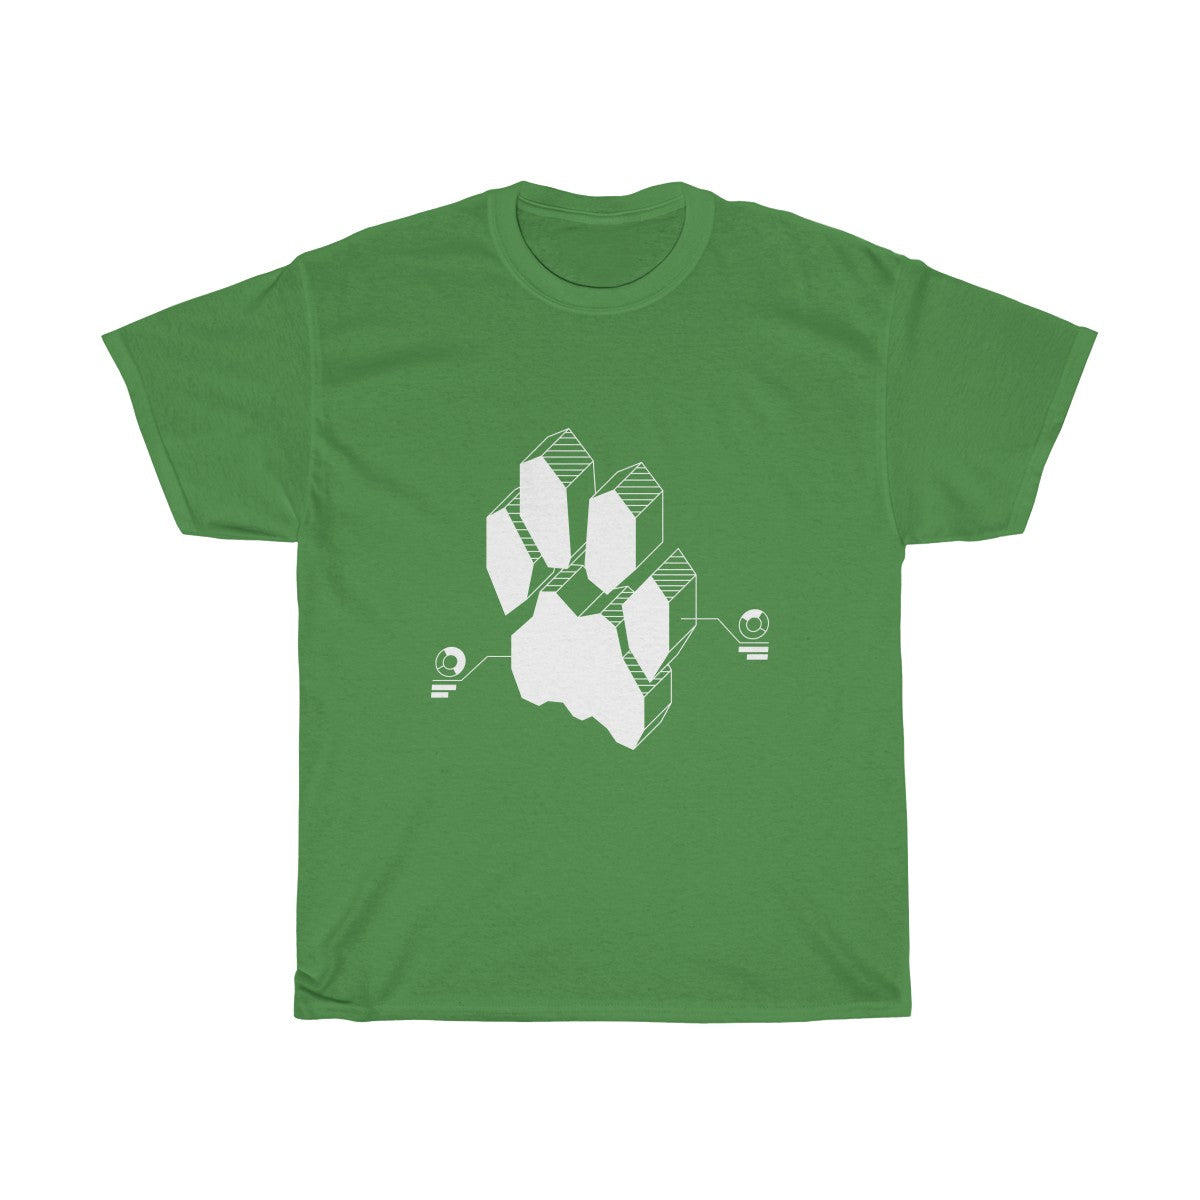 Techno Feline - T-Shirt T-Shirt Wexon Green S 